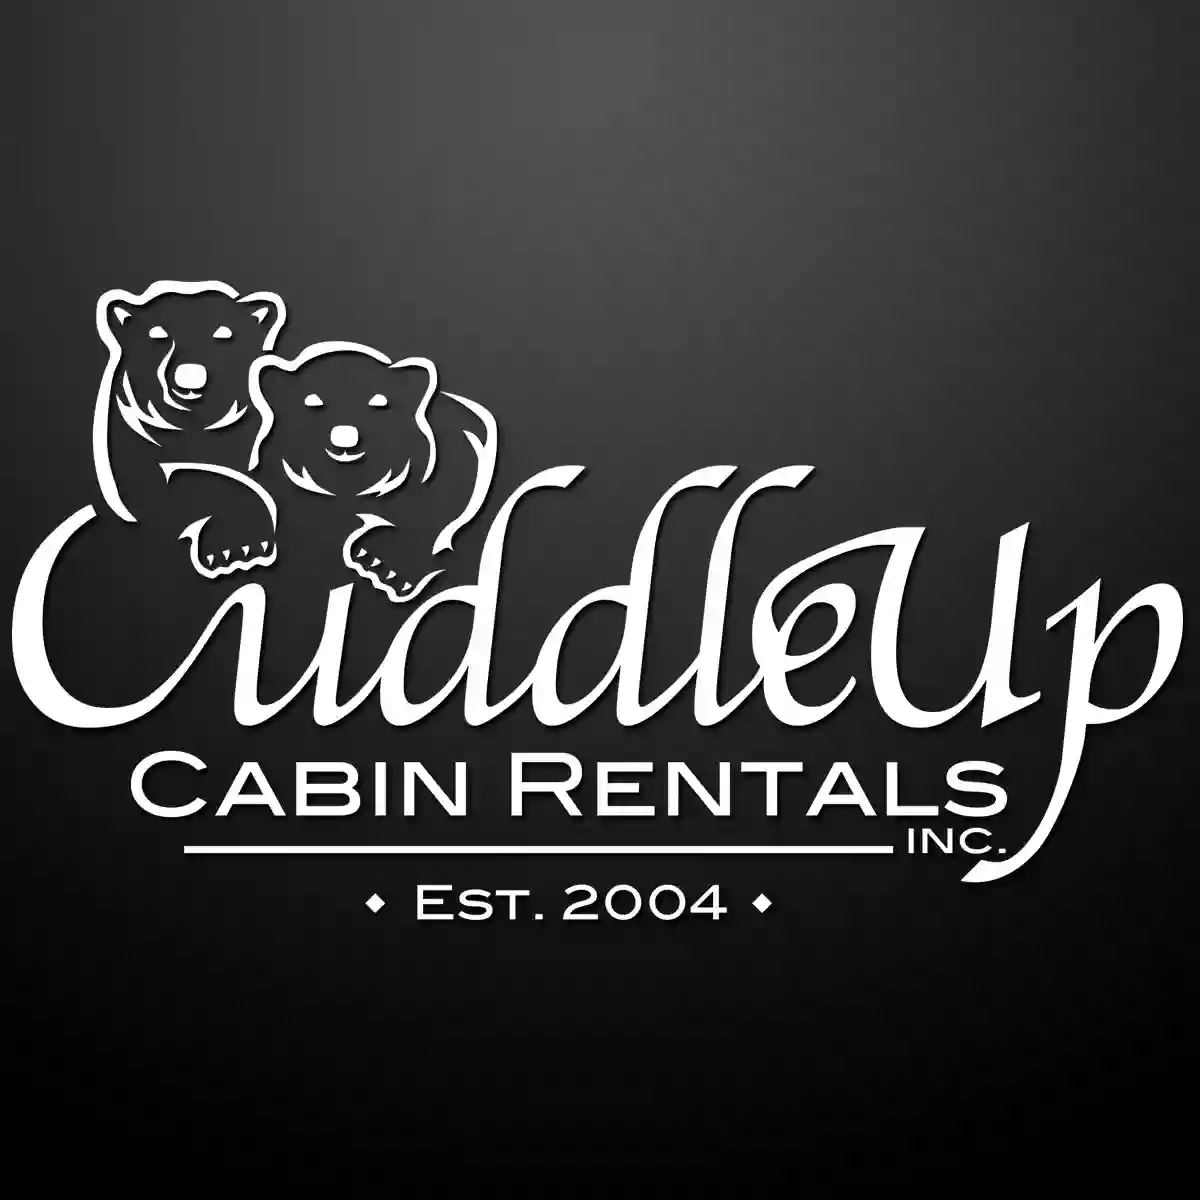 Cuddle Up Cabin Rentals